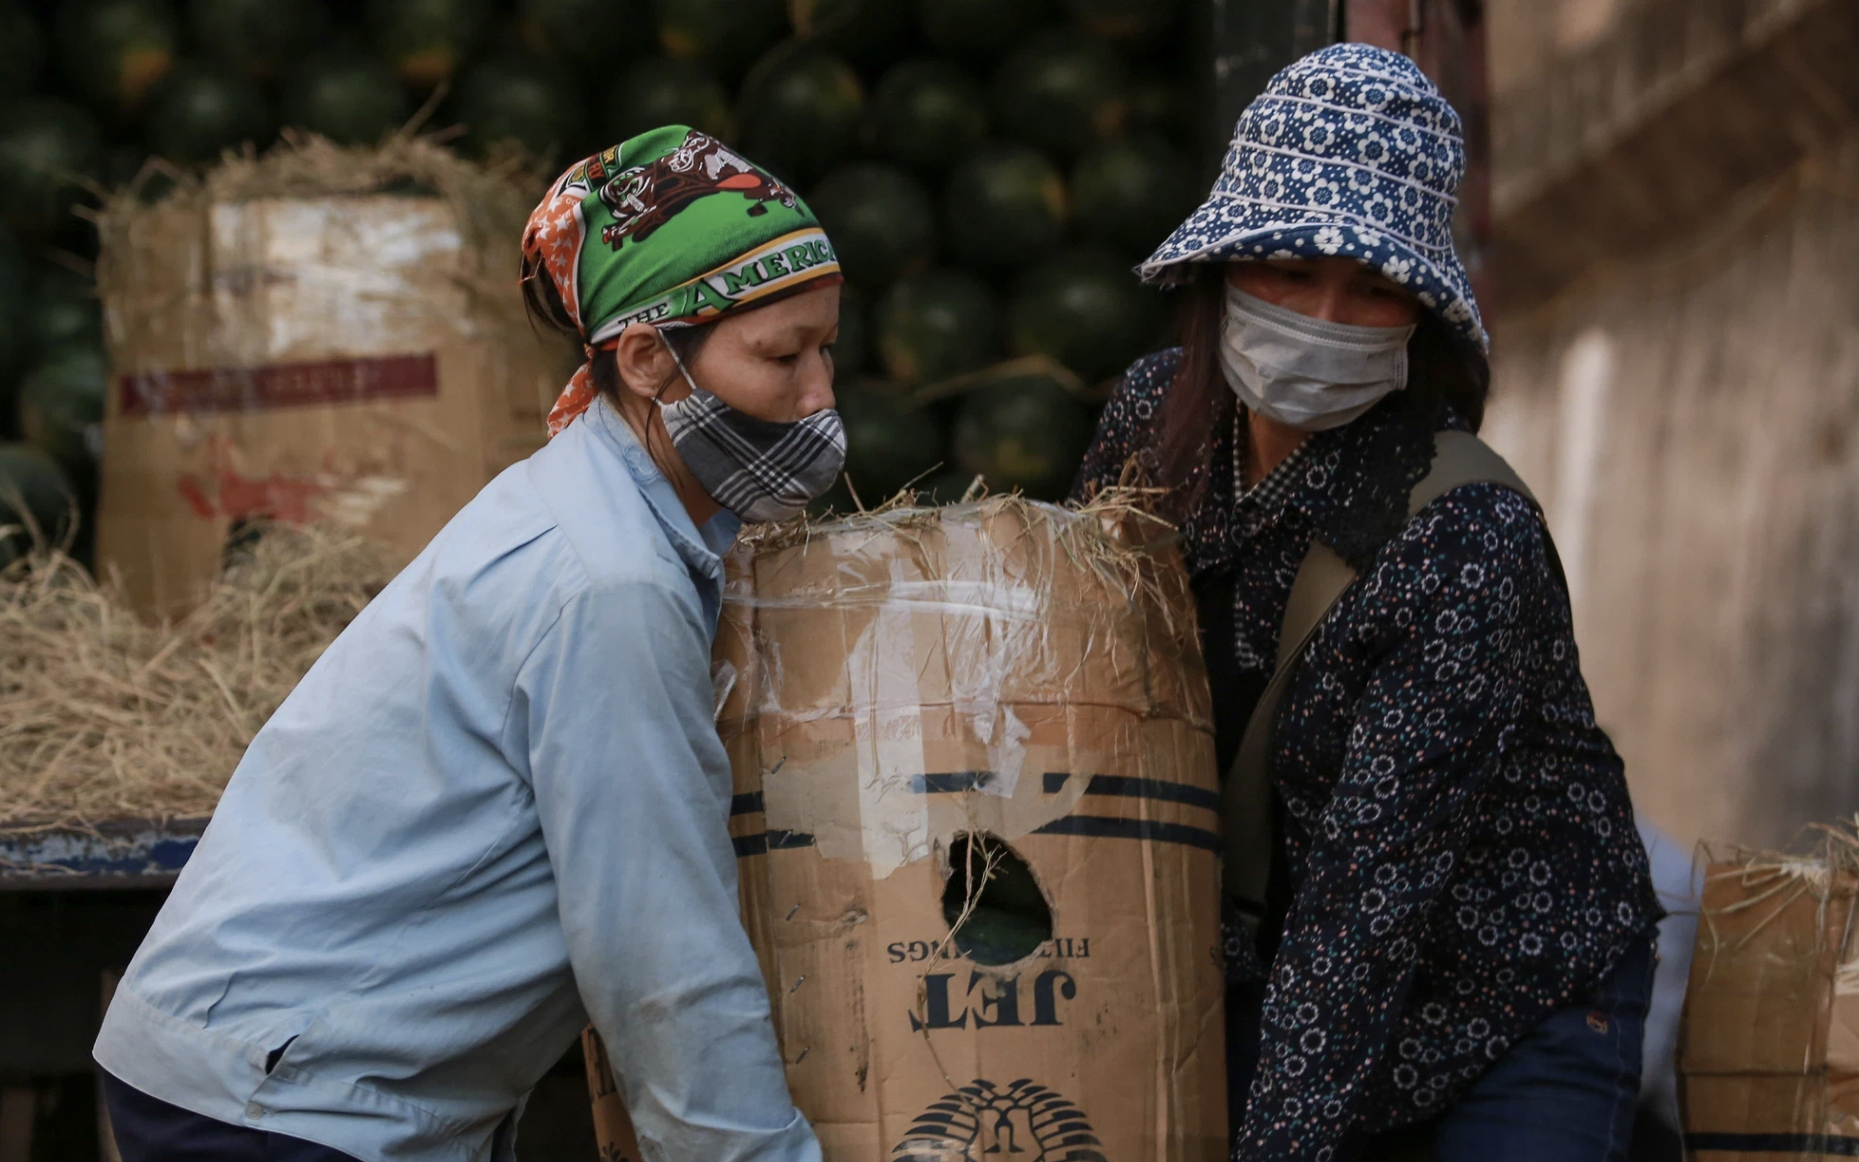 Tiểu thương chợ Long Biên nháo nhào bán tháo hàng tấn dưa hấu, củ đậu... khi hay tin chợ bị phong tỏa: "Lỗ cũng phải bán hết"